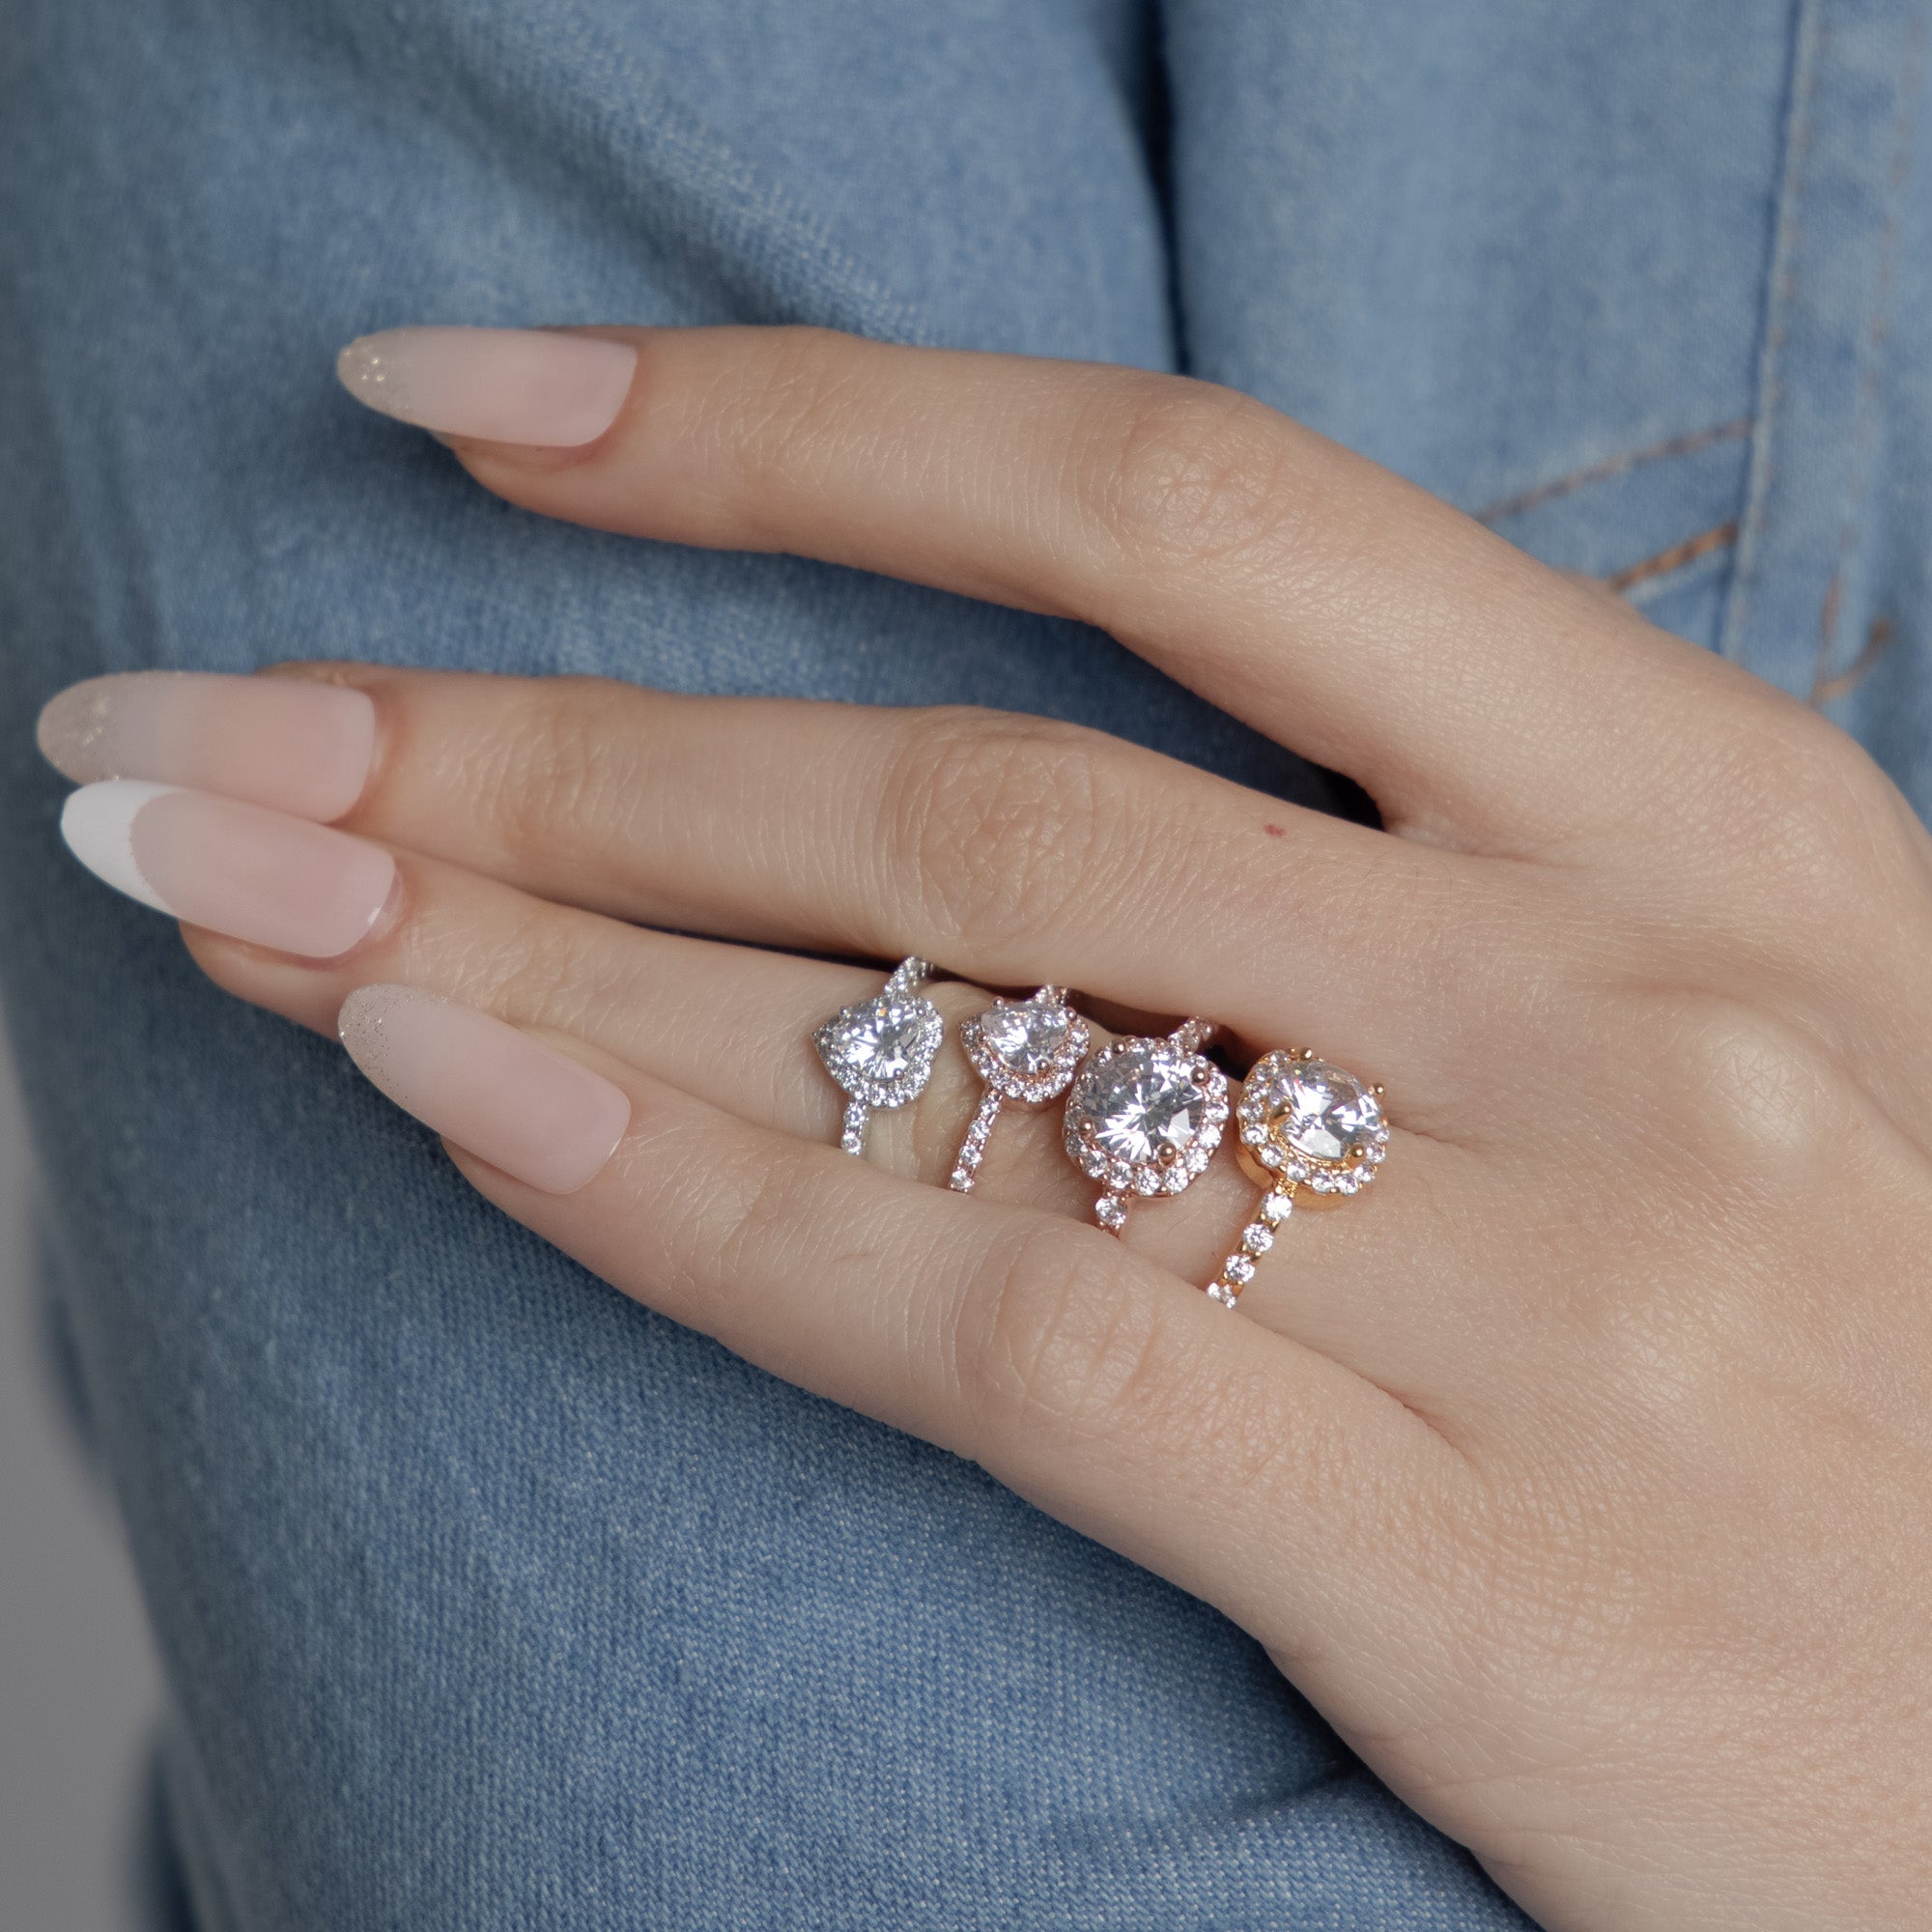 Diamond Shaped Rings - Upakarna Jewelry